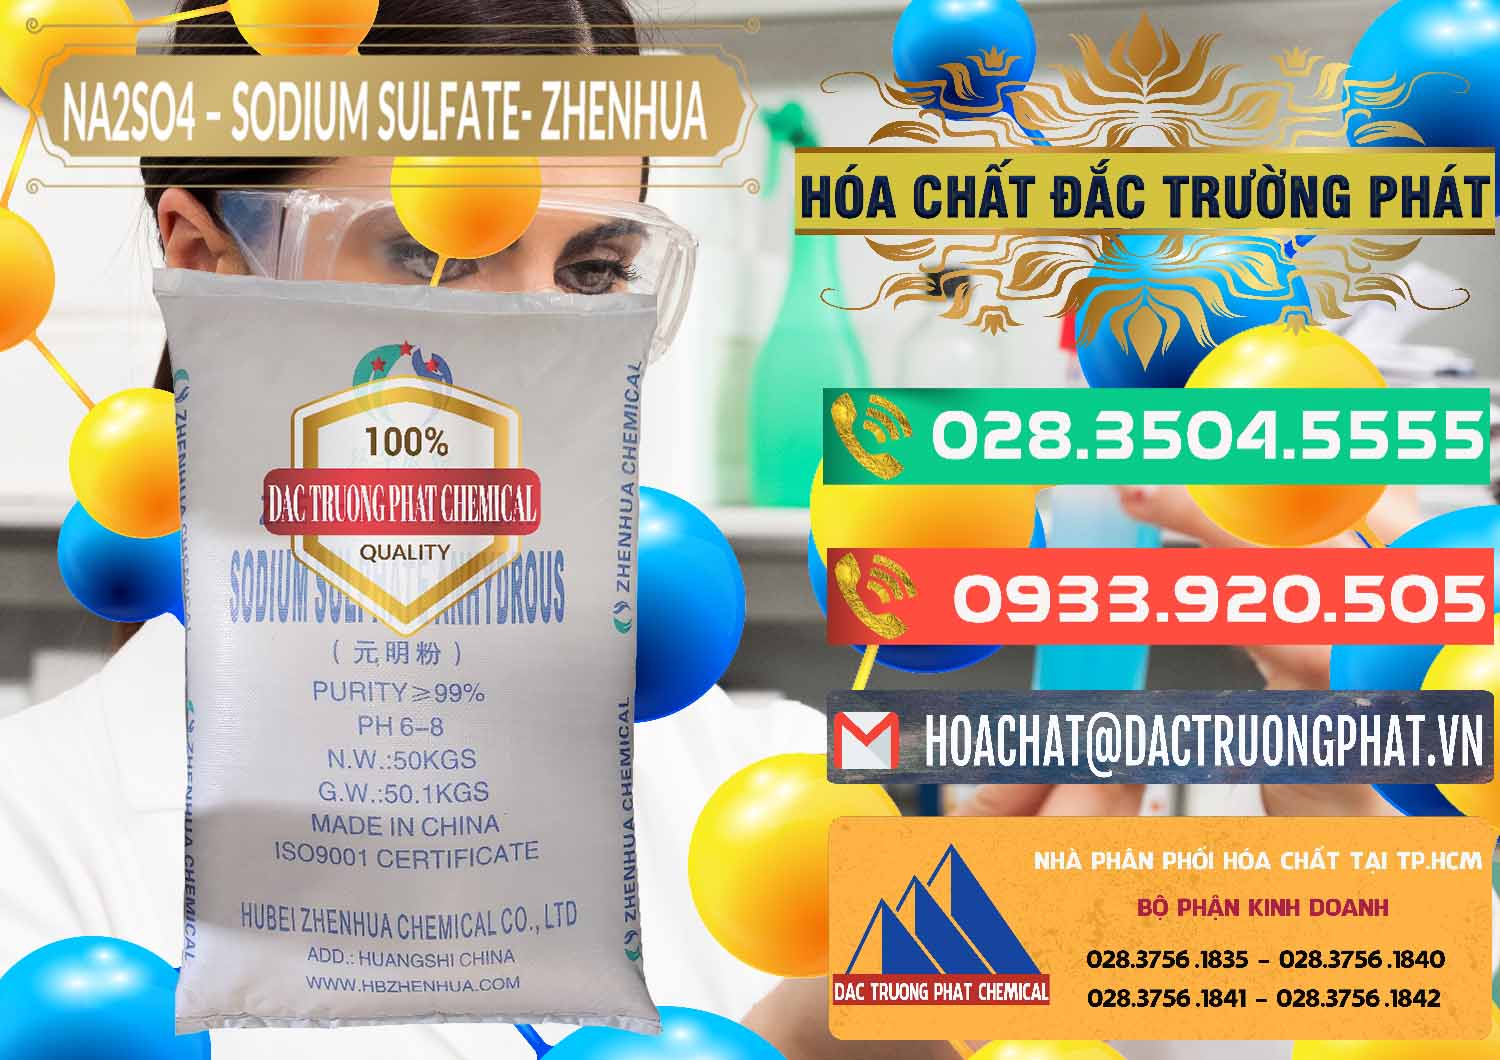 Chuyên cung cấp _ bán Sodium Sulphate - Muối Sunfat Na2SO4 Zhenhua Trung Quốc China - 0101 - Chuyên phân phối - cung cấp hóa chất tại TP.HCM - congtyhoachat.com.vn